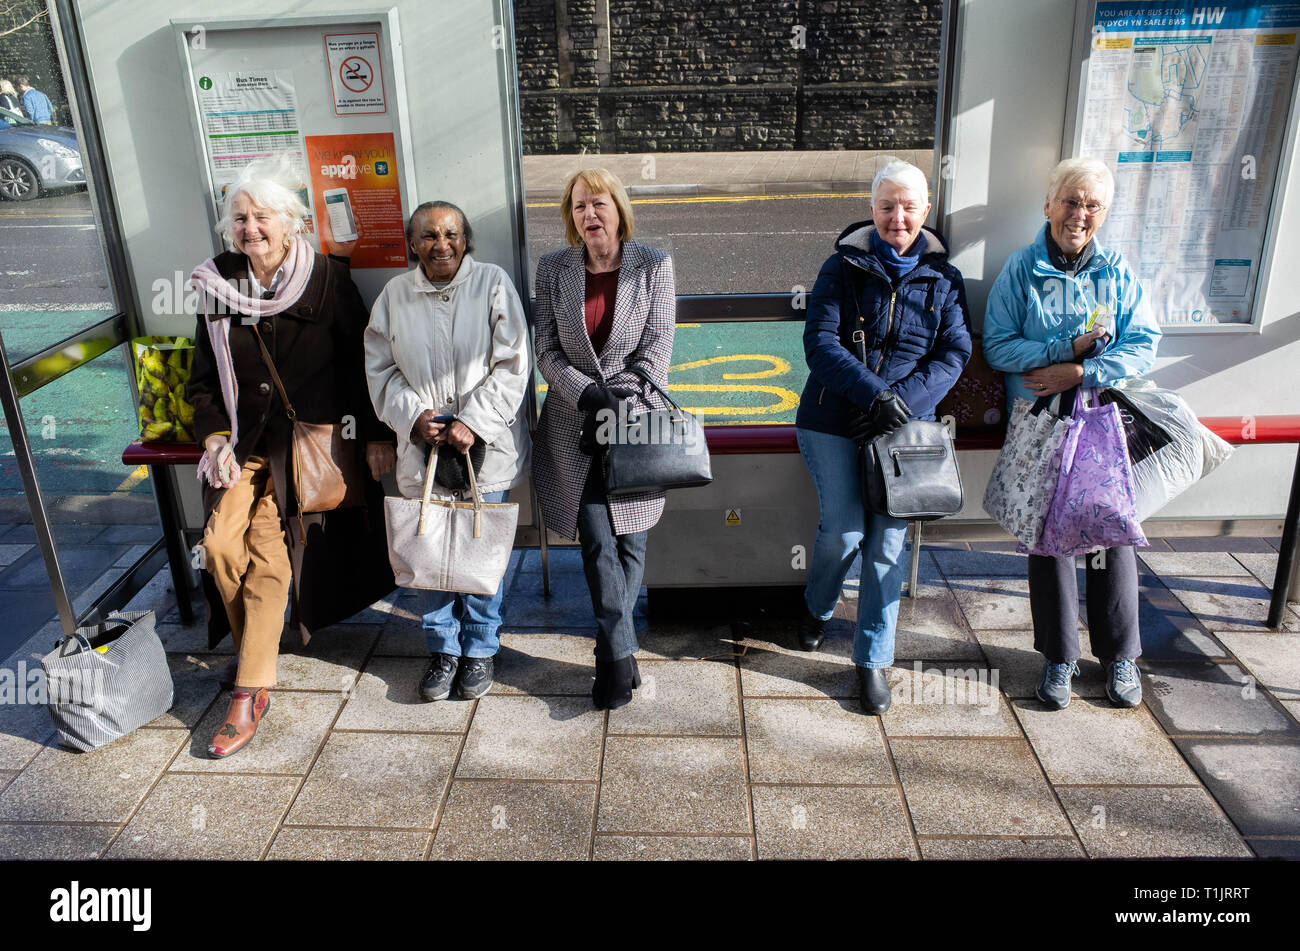 CARDIFF, UNITED KINGDOM.  7 February 2019.  (L-R) Marlene, Cynthia, Margaret, Ellen & Maureen all wait for their bus in Cardiff city centre.  Cardiff  Stock Photo